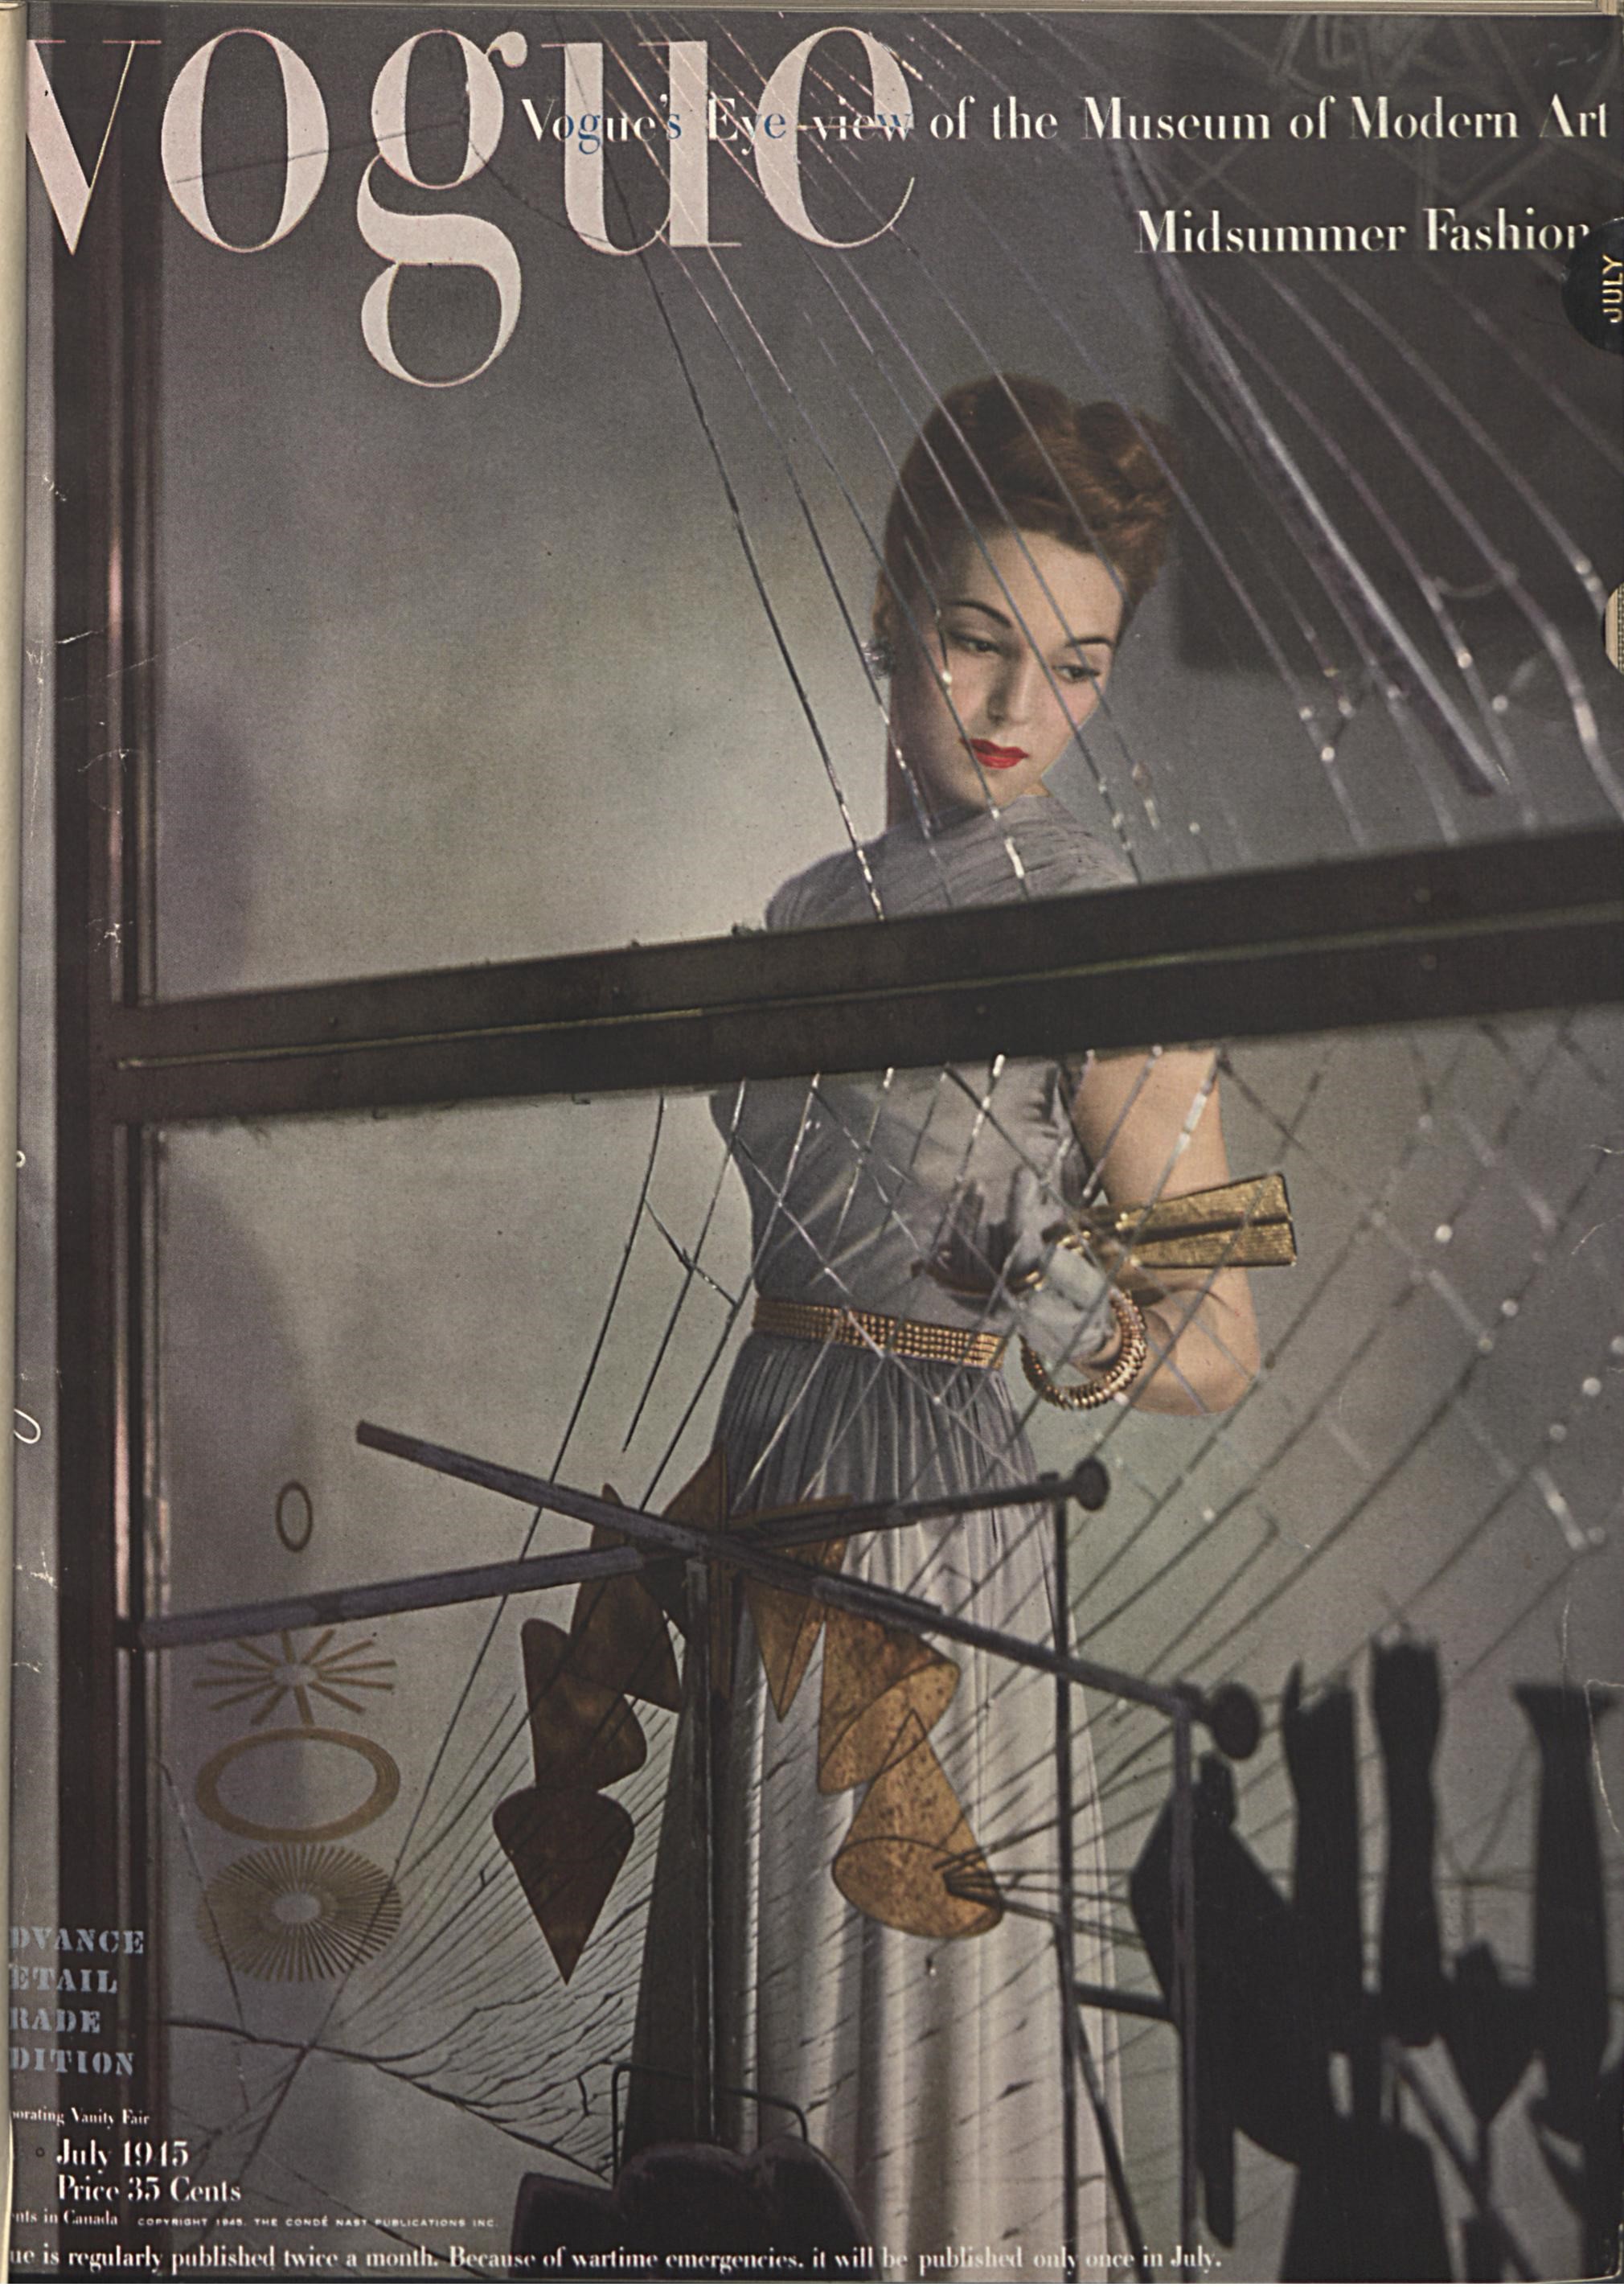 Vogue (U.S. Edition, July 1945), cover © 2012 Condé Nast